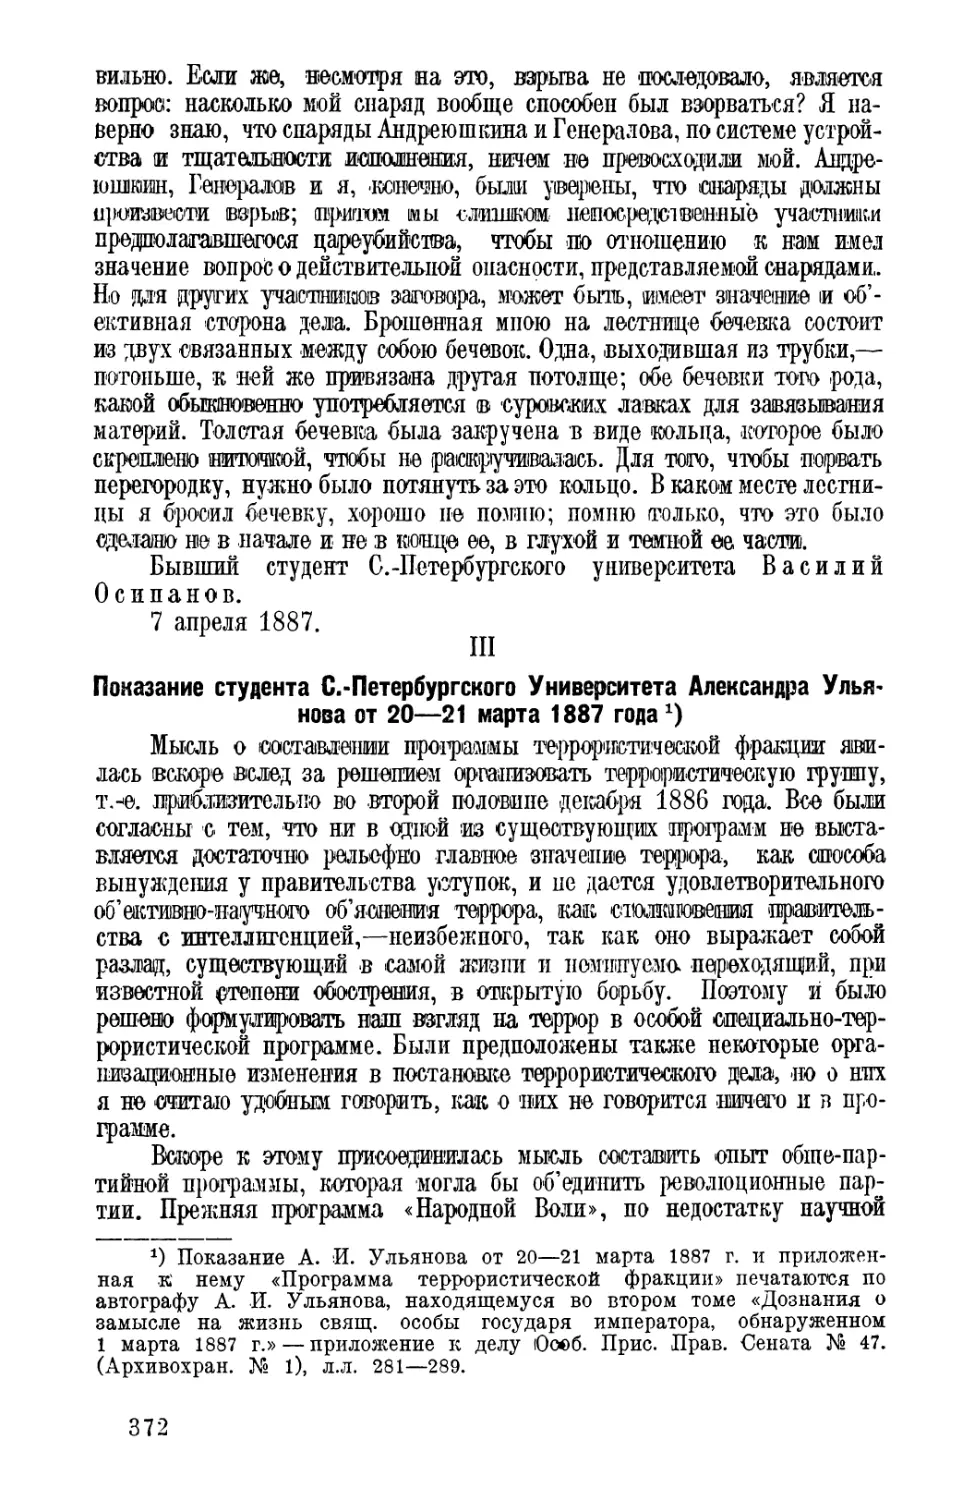 3. Показания А. И. Ульянова 20—21 марта 1887 г